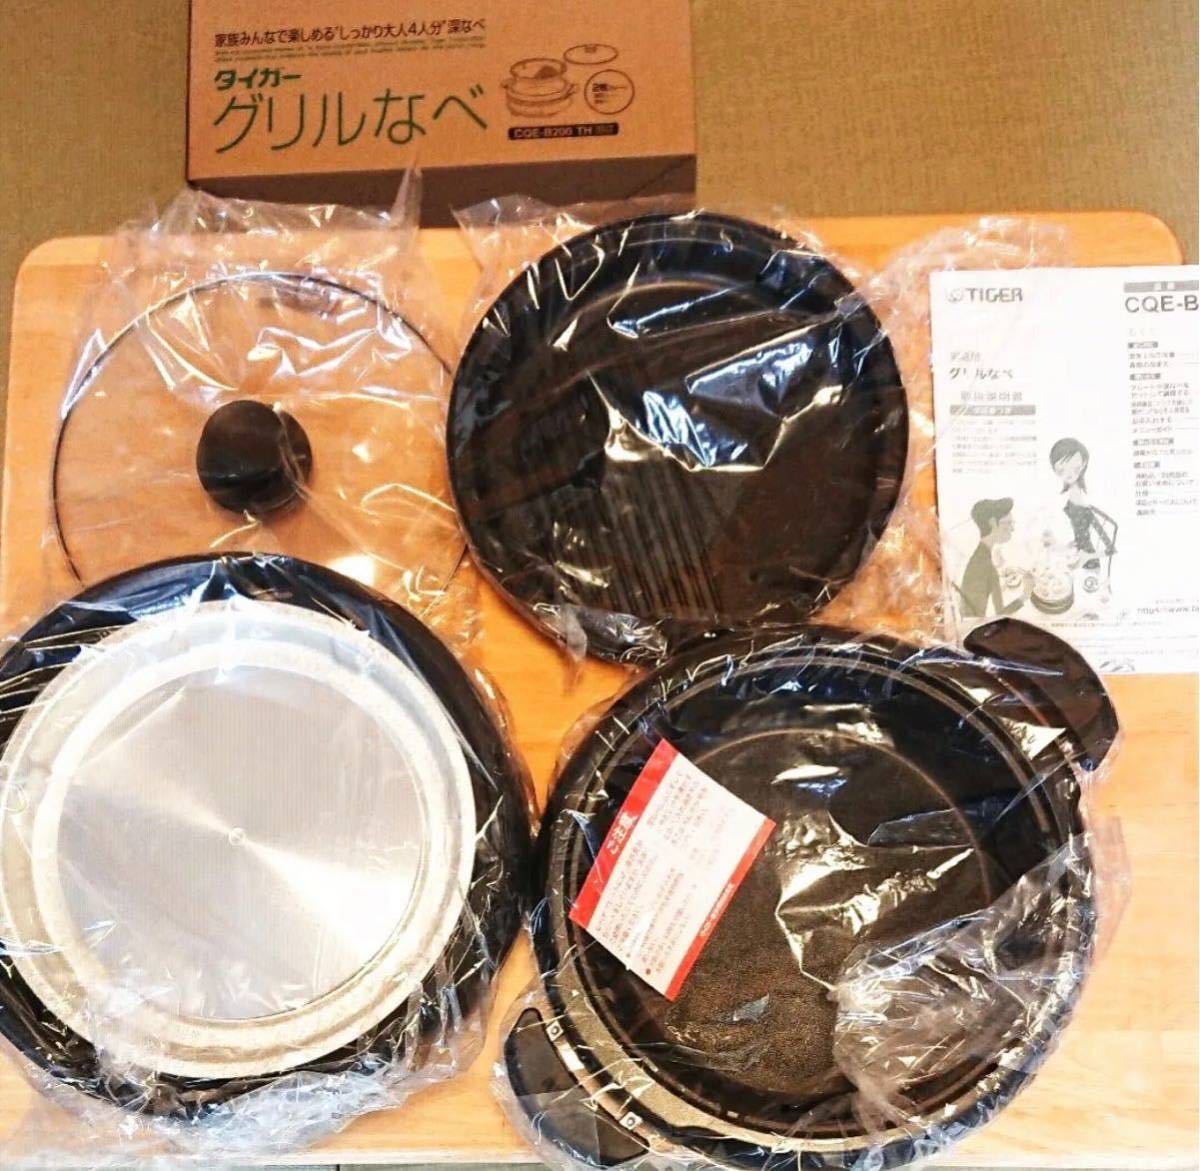 タイガー グリル鍋 CQE-B200(TH) 新品 4年2月15日購入 2 - 6